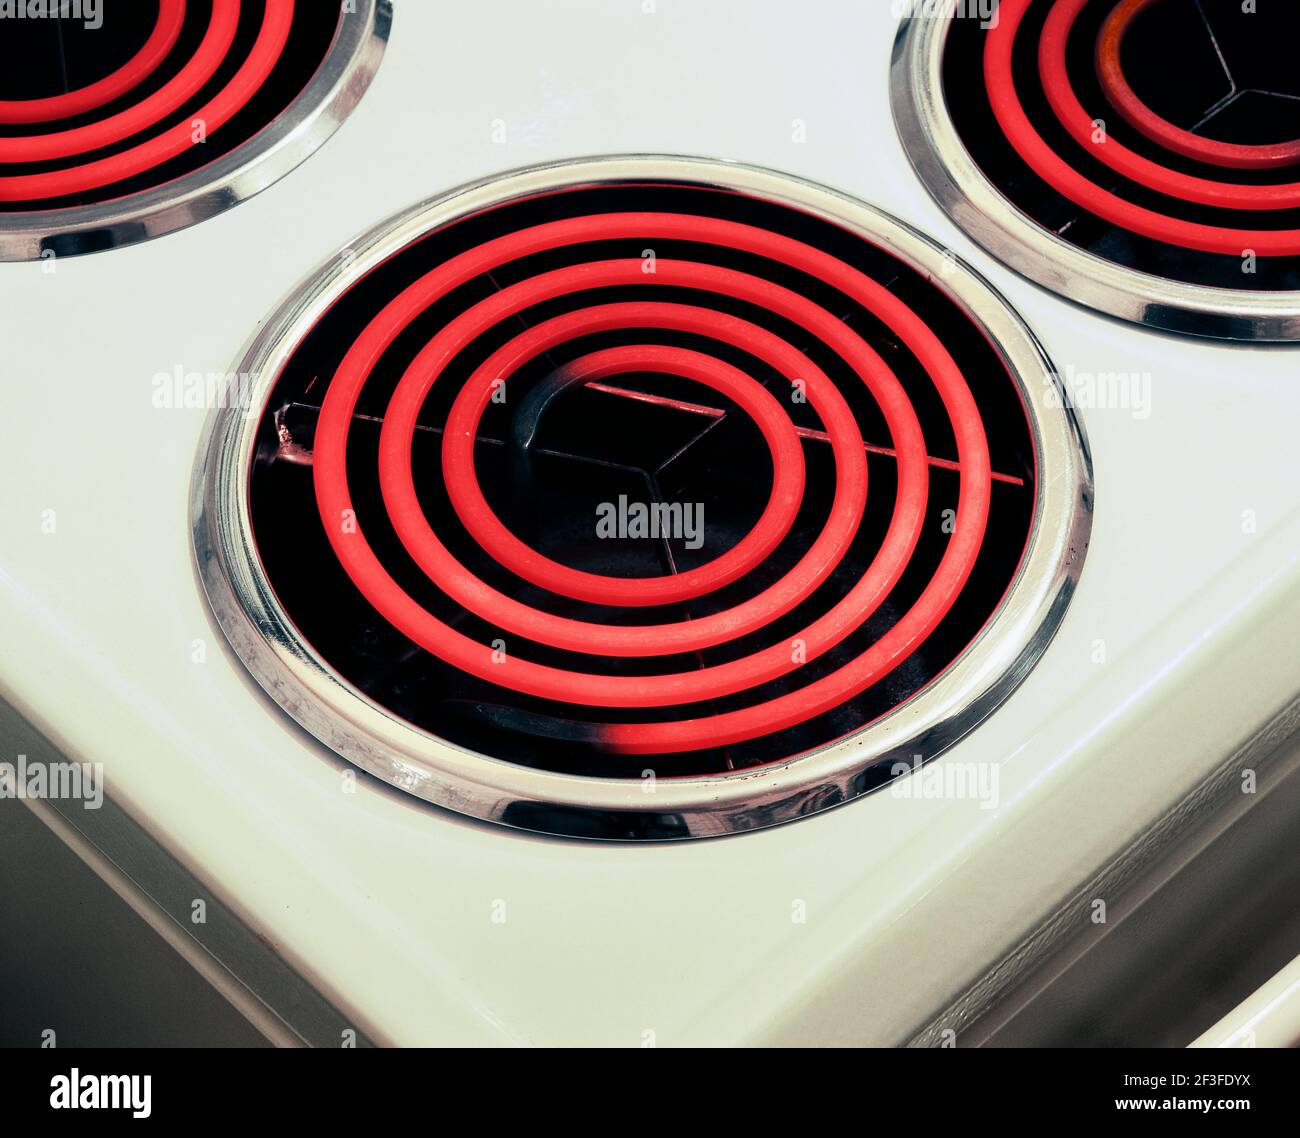 Primer plano de estufa eléctrica con anillos calientes rojos brillantes. Foto de stock